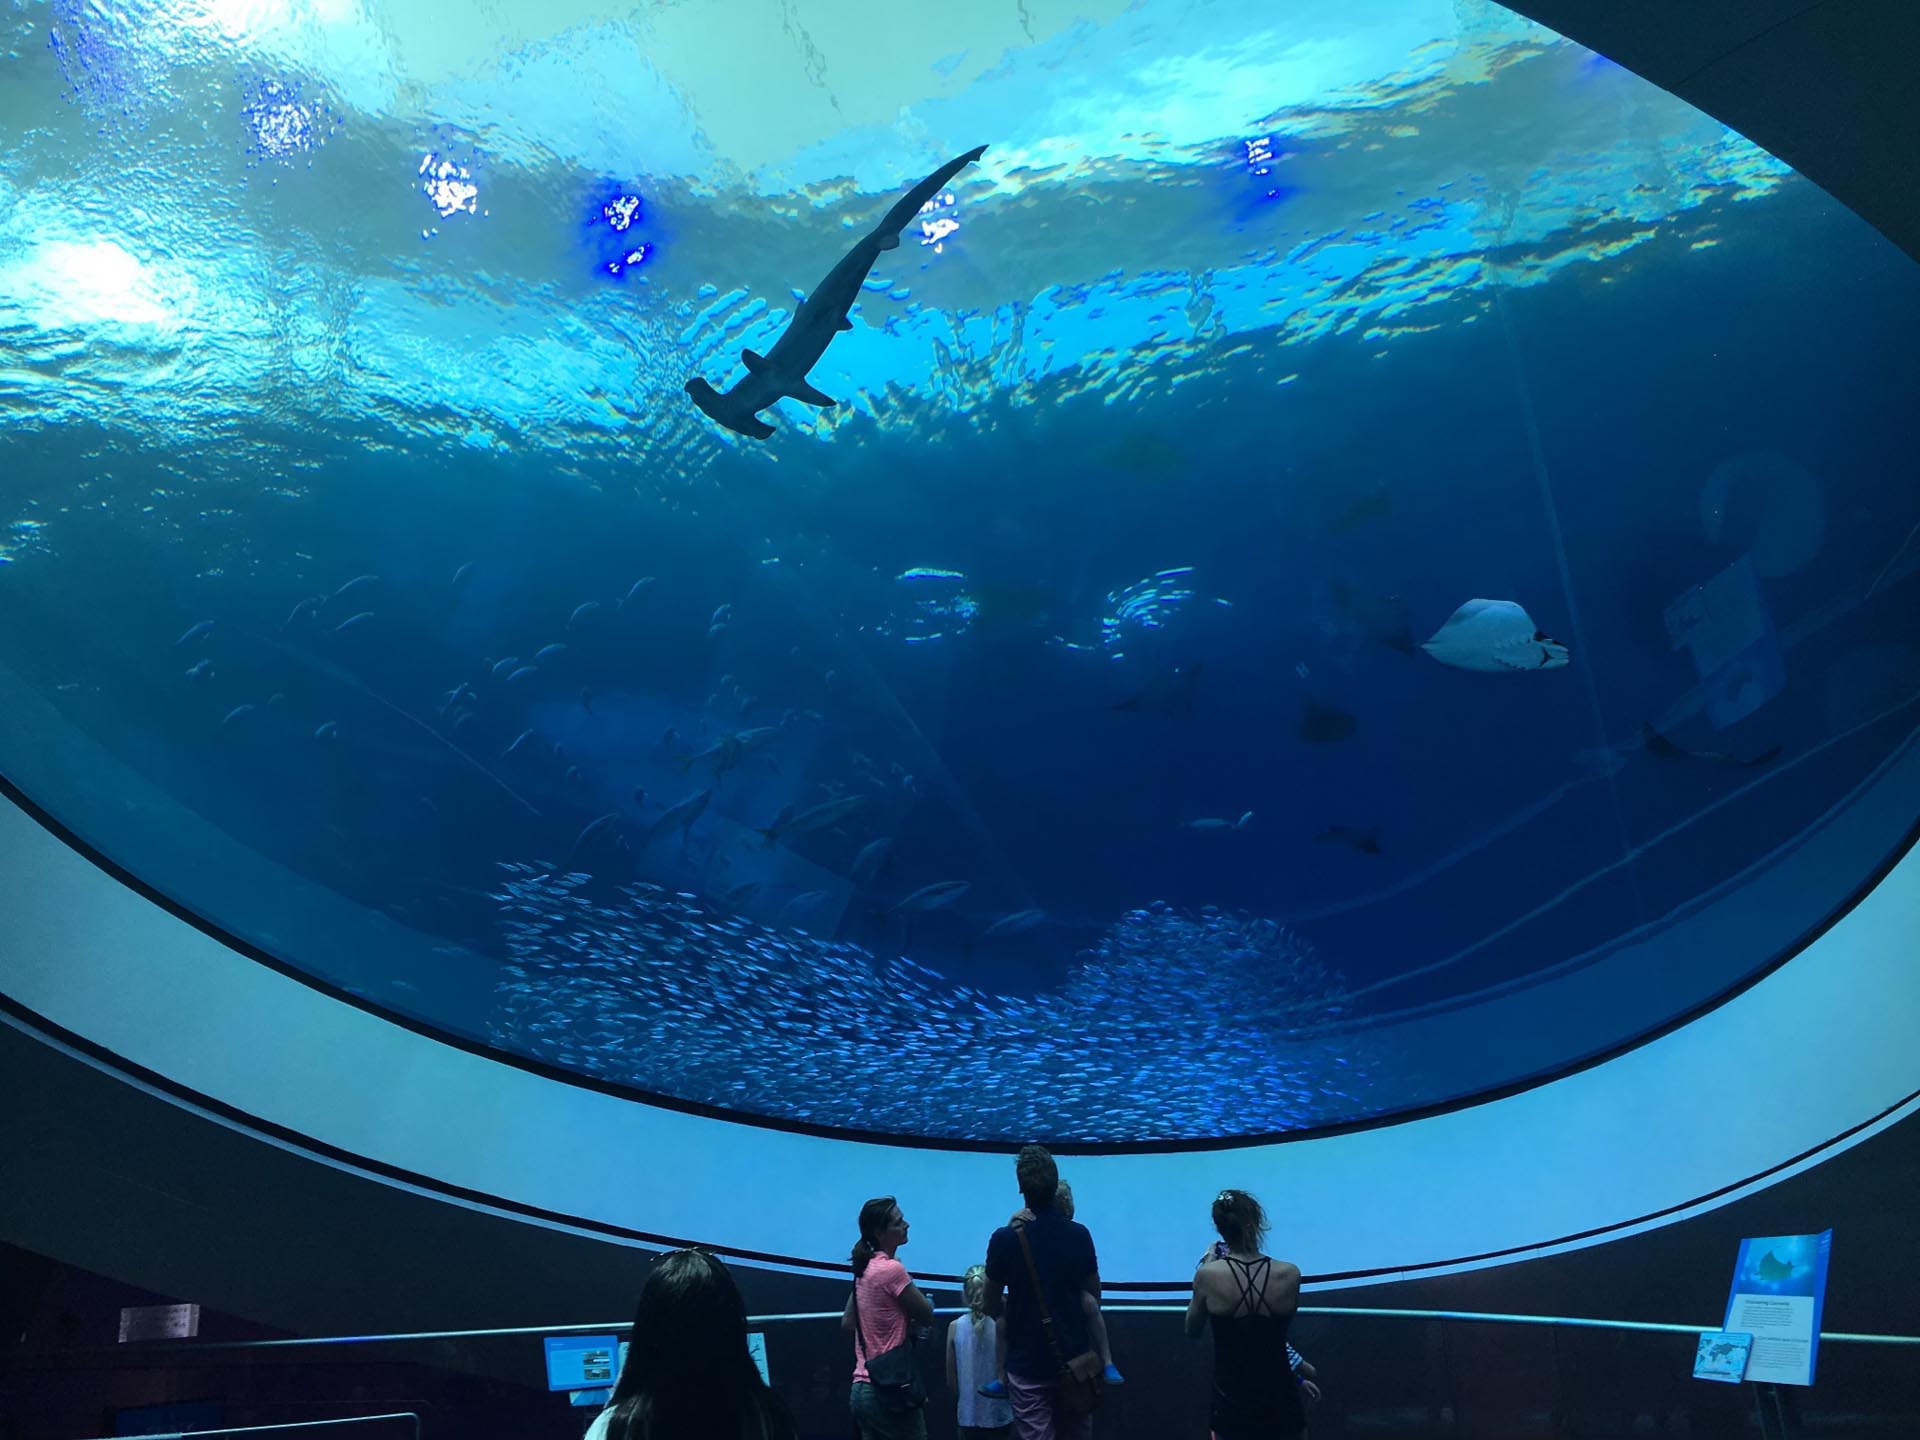 Shark in aquarium tank